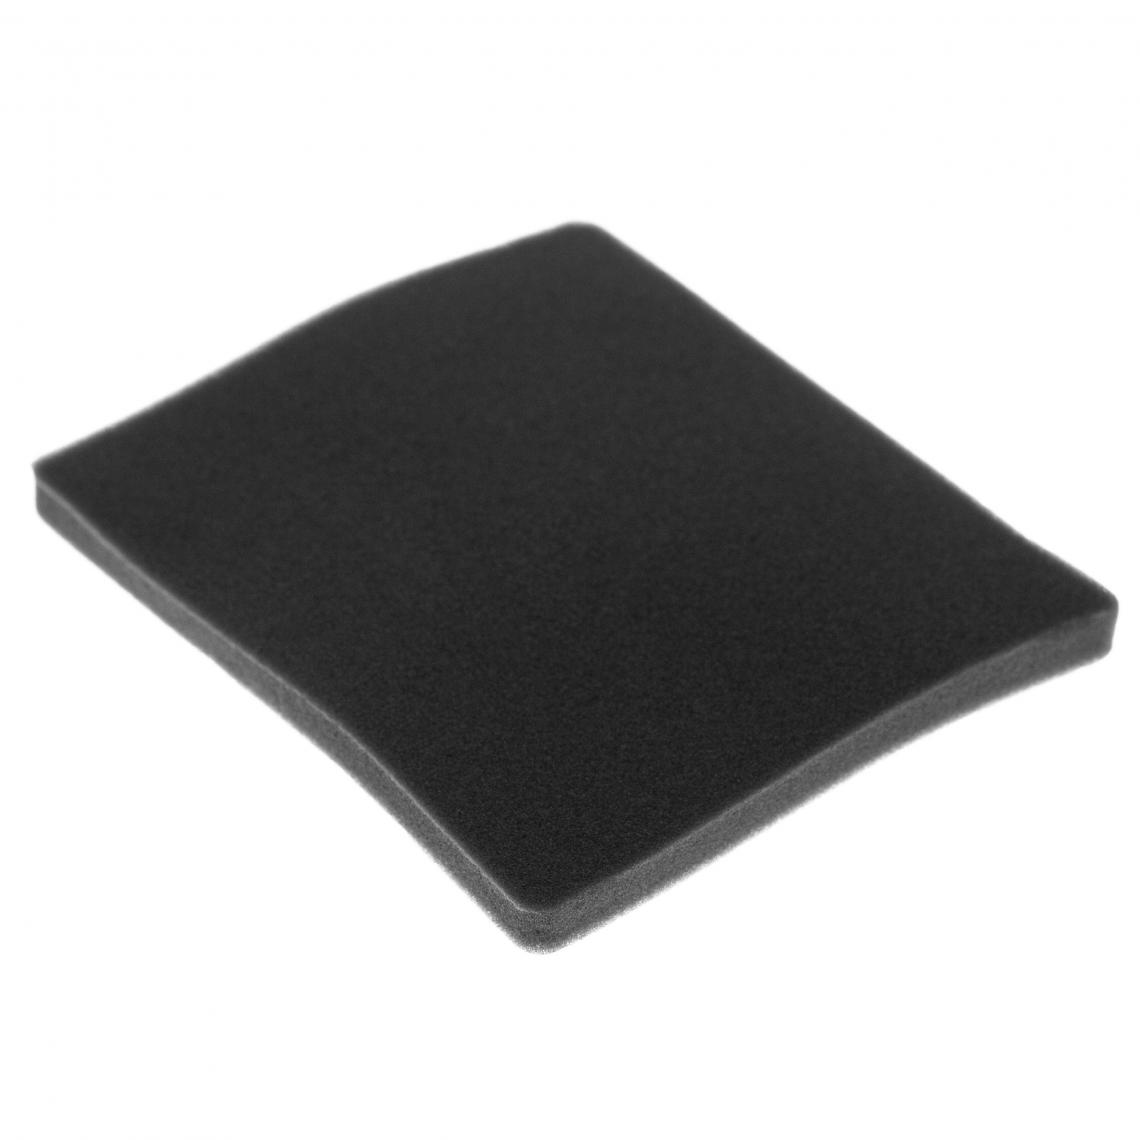 Vhbw - vhbw Filtre compatible avec Electrolux ZAM6104 (910286629) aspirateur - filtre de sortie d'air (filtre éponge), noir - Accessoire entretien des sols